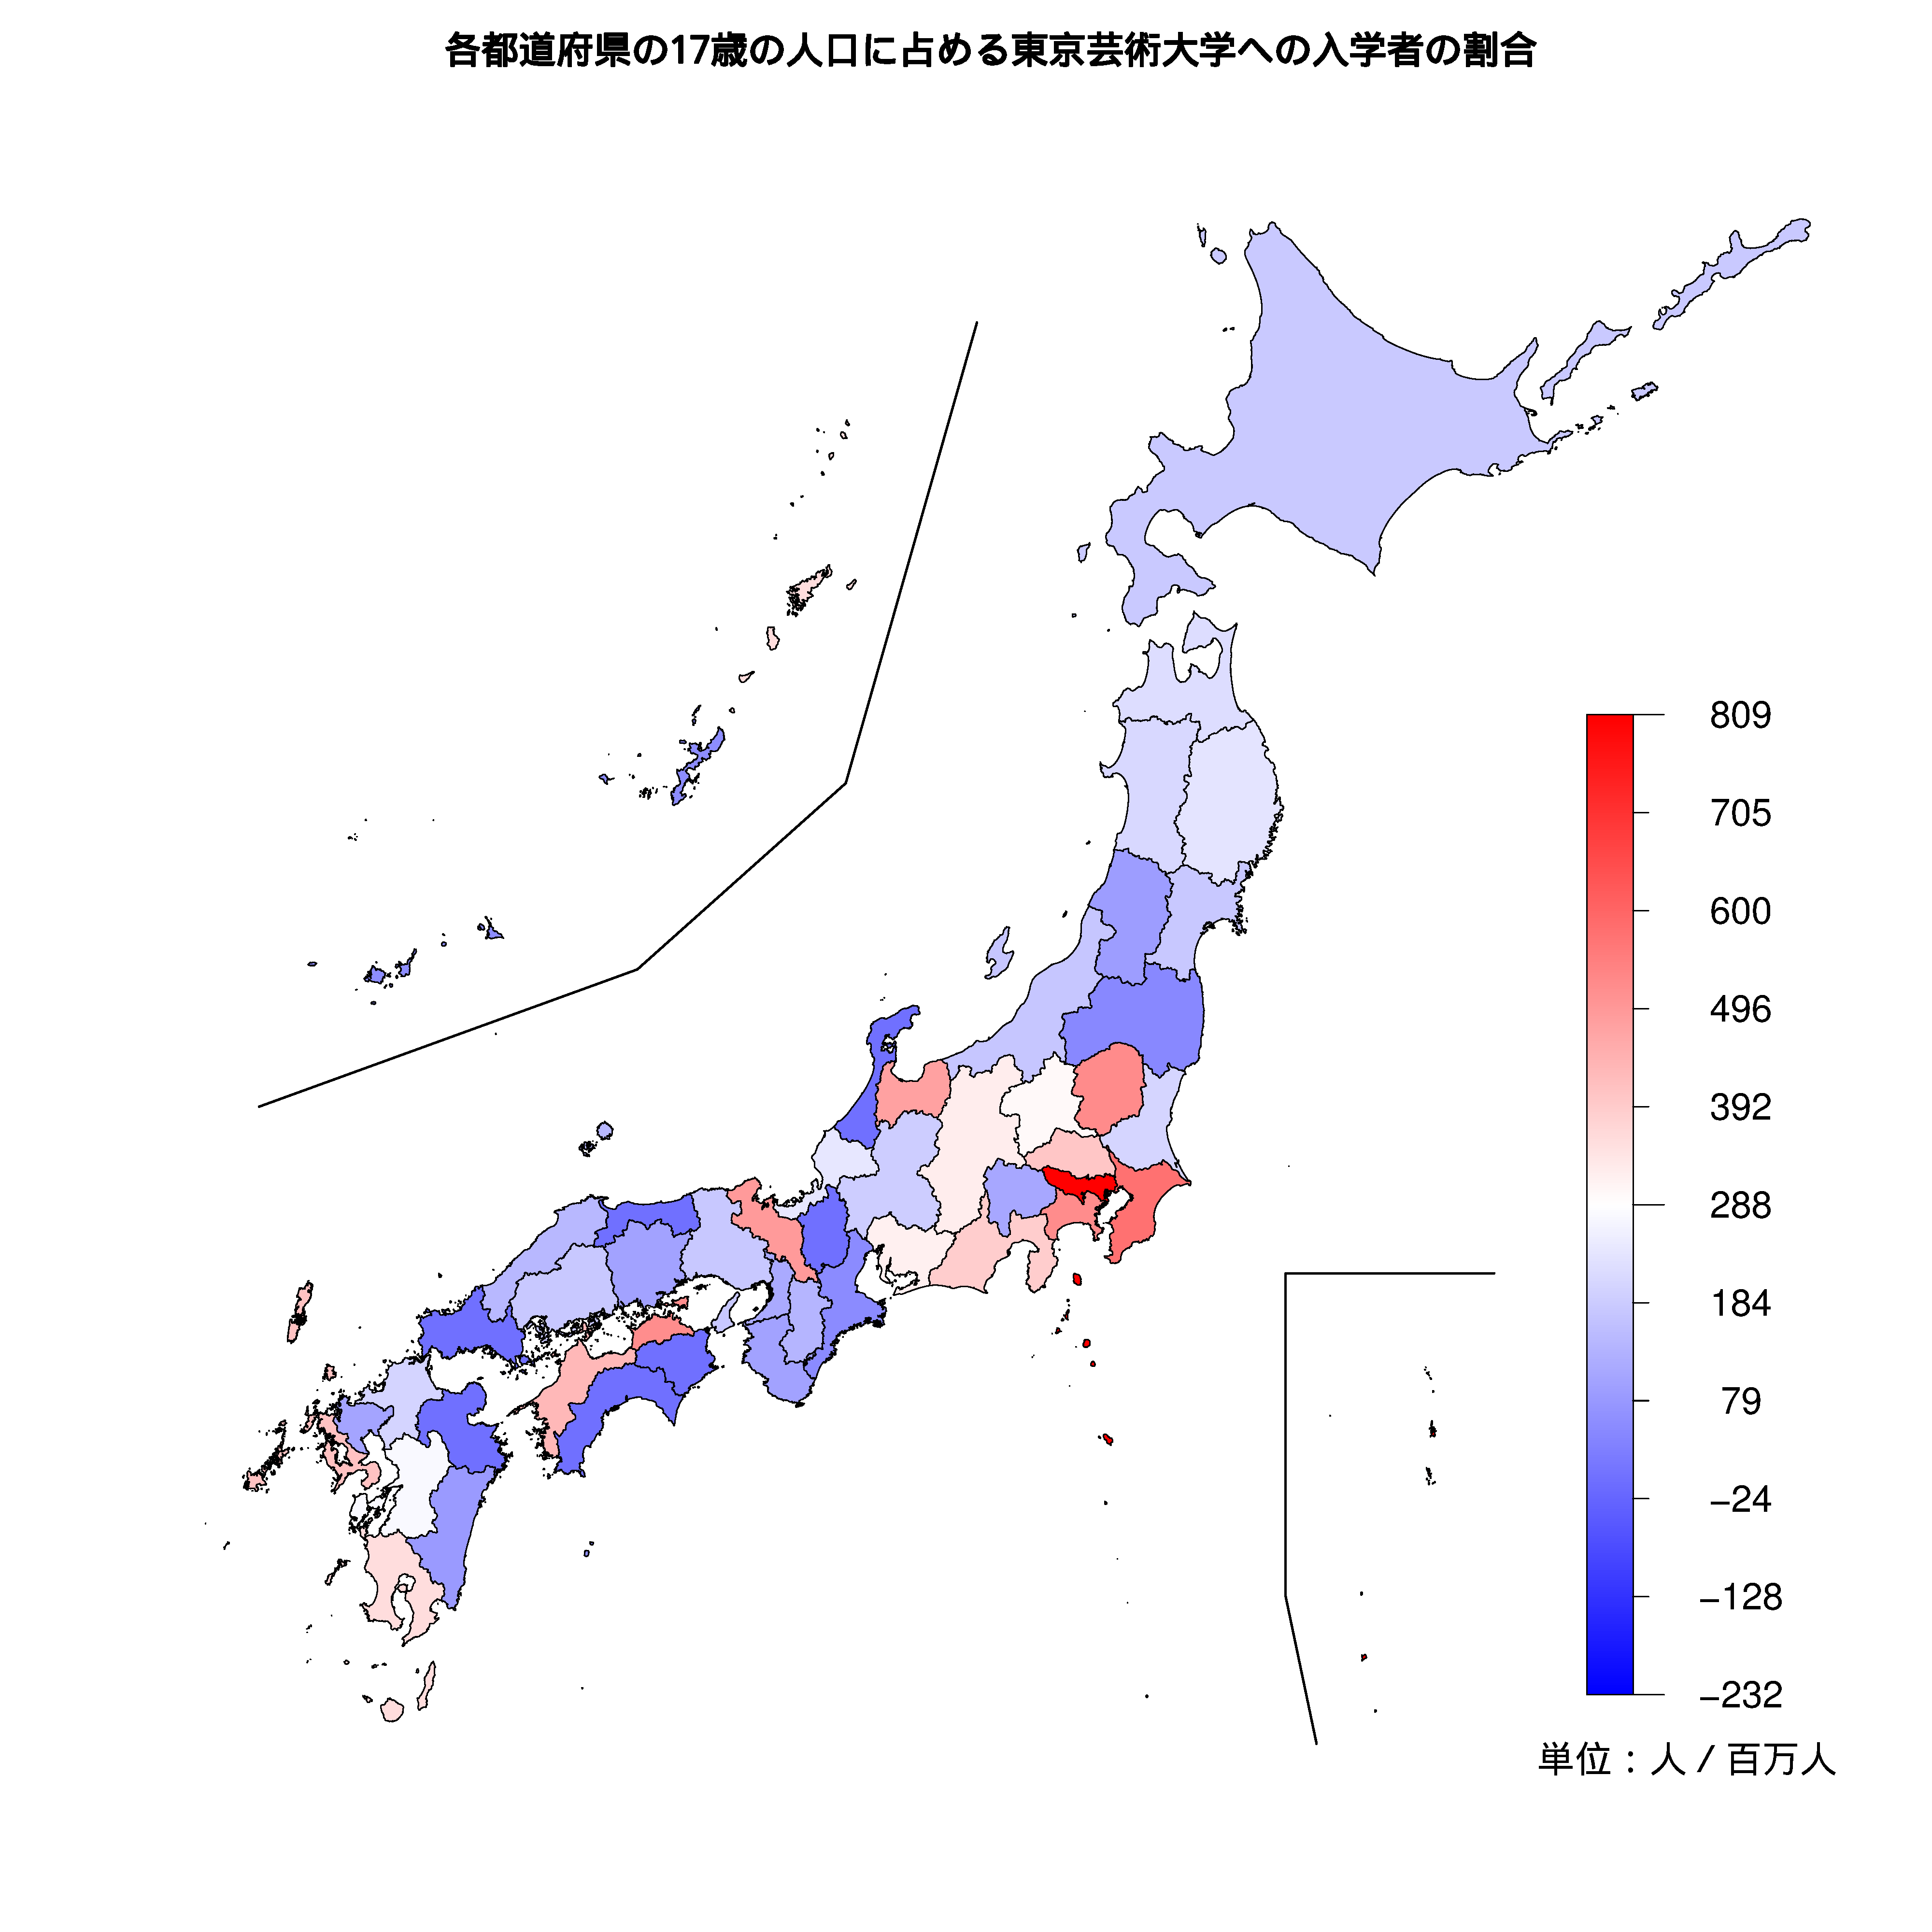 東京芸術大学への入学者が多い都道府県の色分け地図